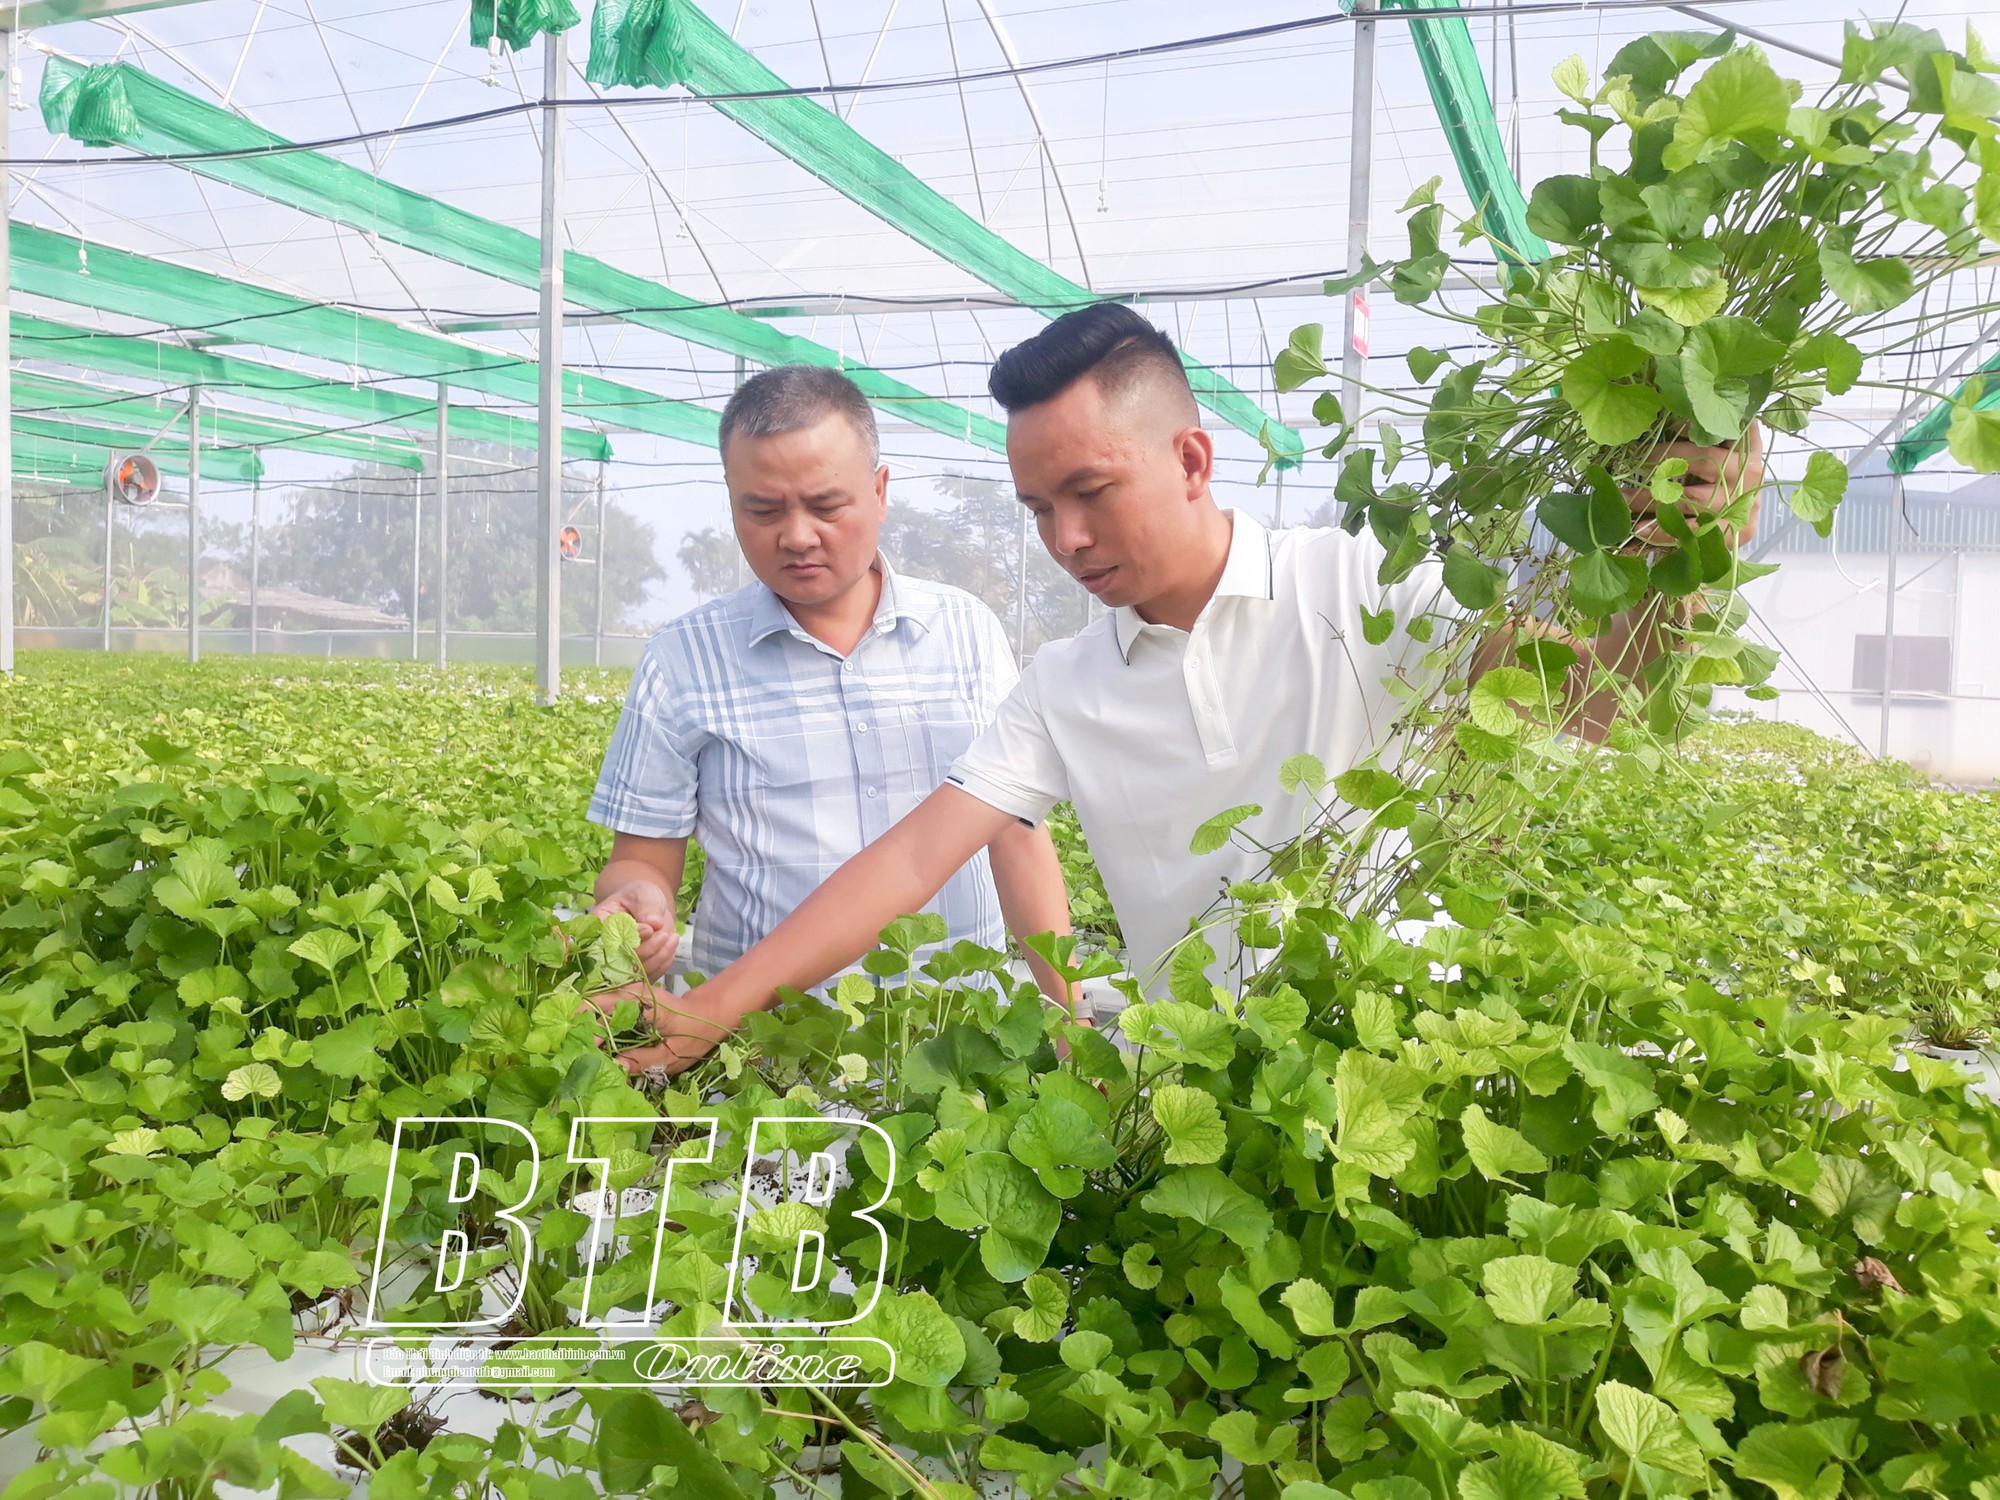 Trồng rau má mà không cần đất, giám đốc HTX ở Thái Bình đem xay thành bột, bán 3 triệu đồng/kg - Ảnh 1.